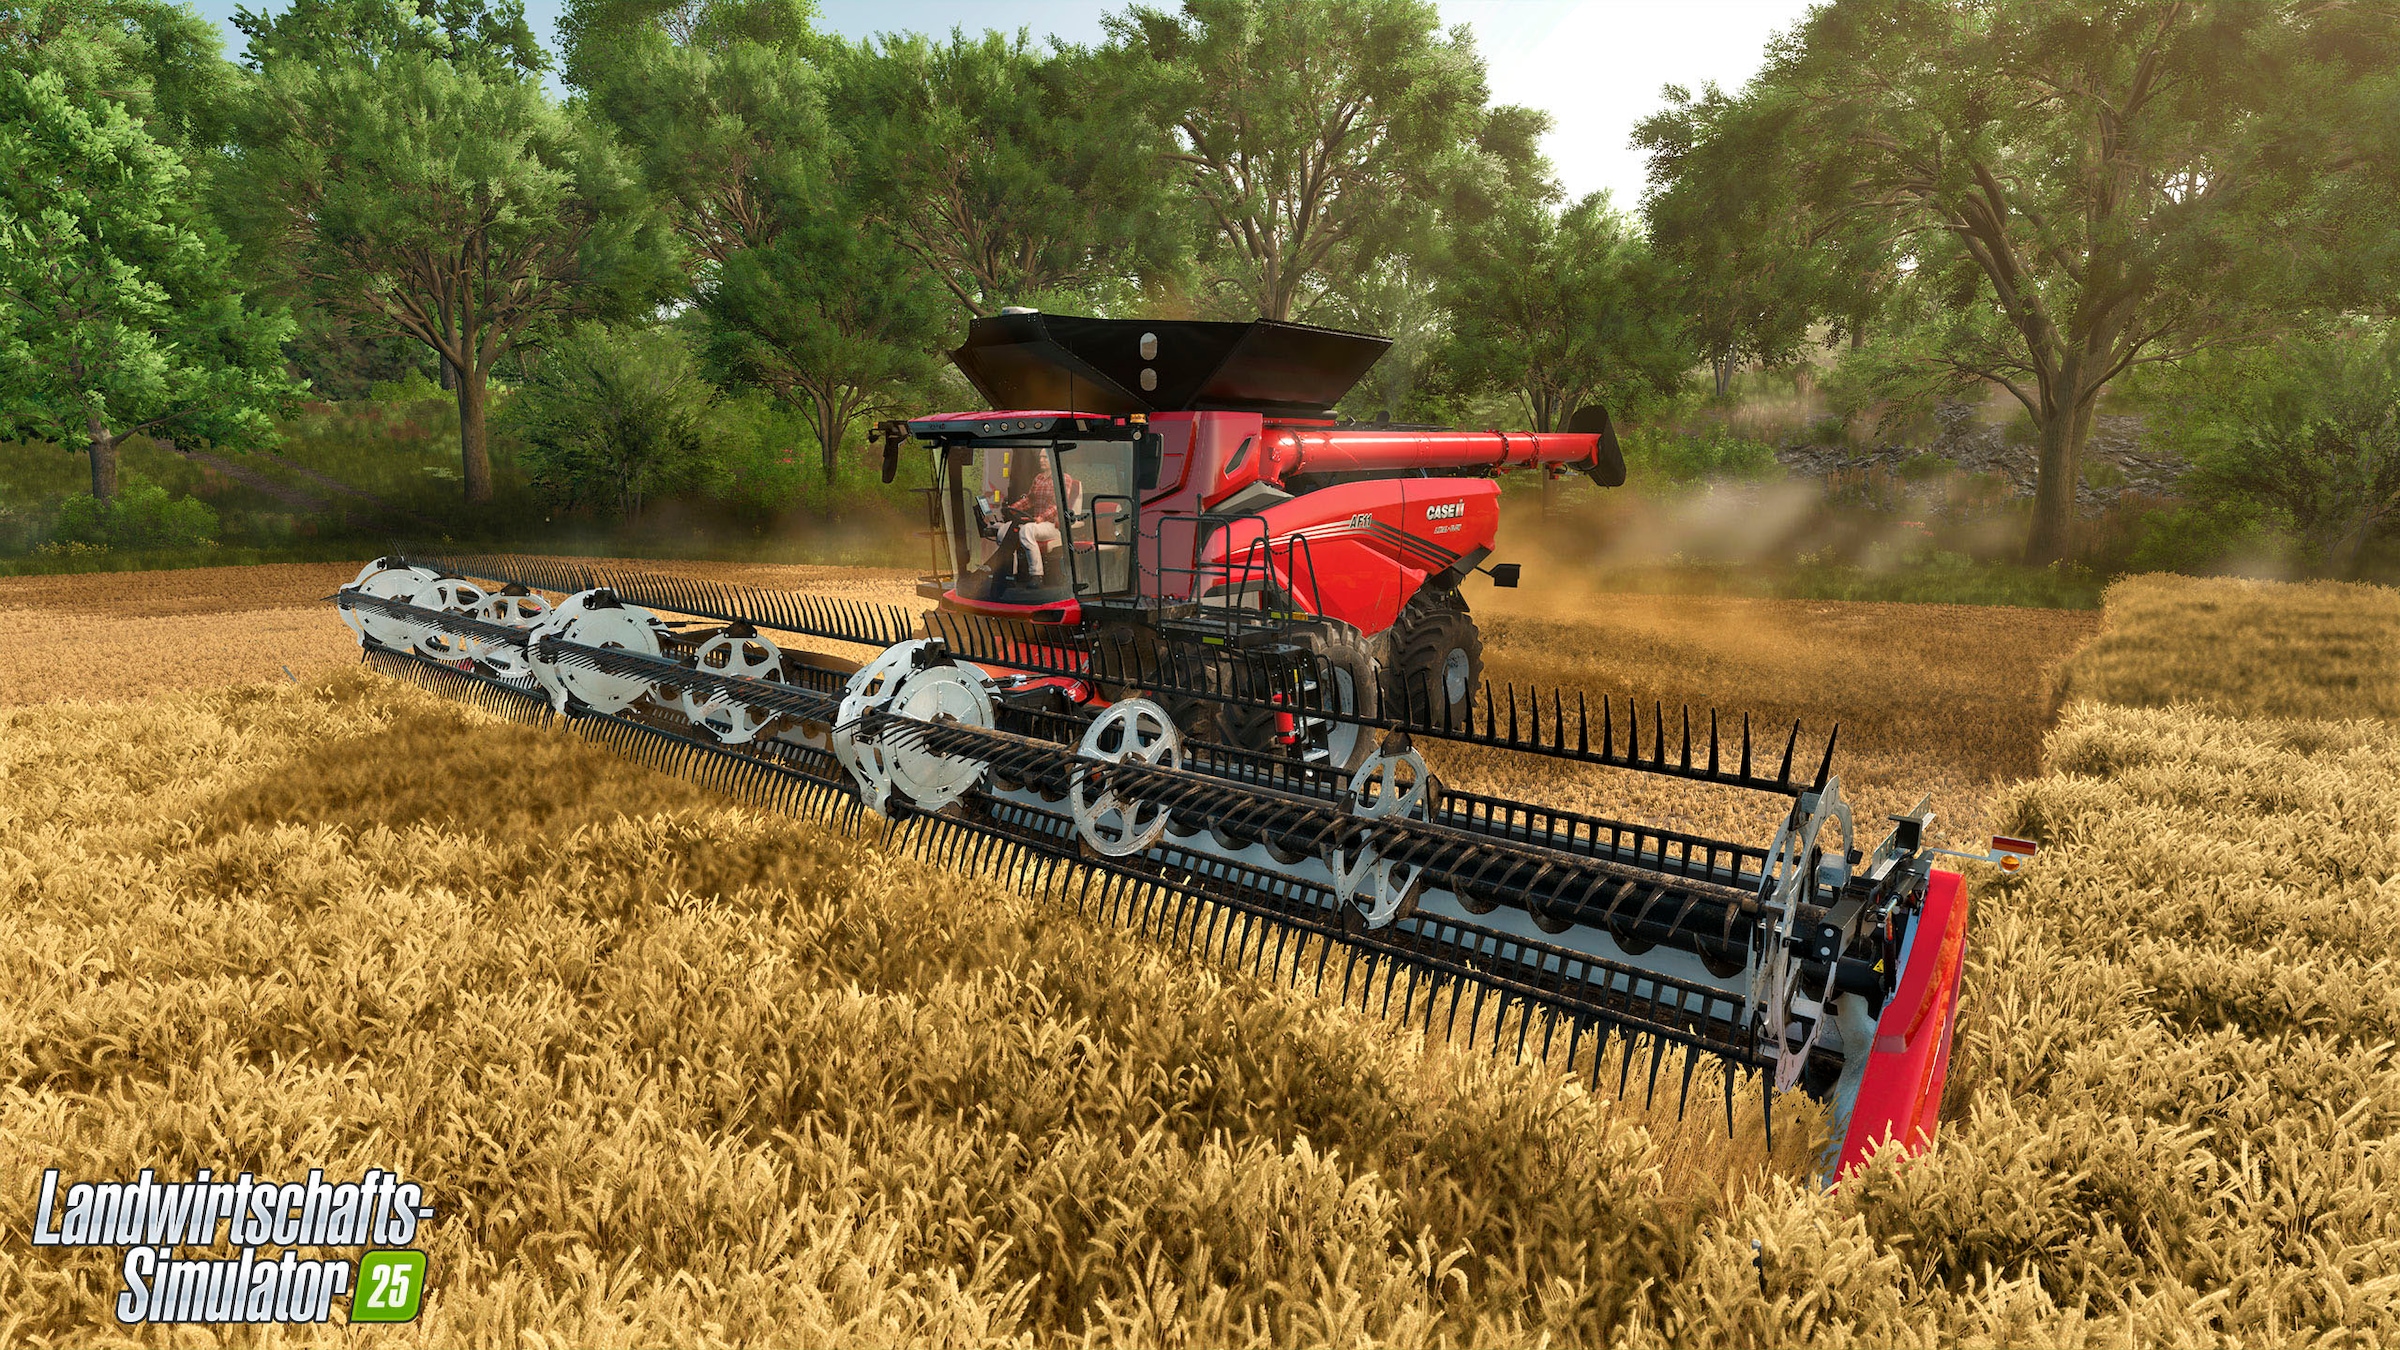 Astragon Spielesoftware »Landwirtschafts-Simulator 25 Collector's Edition«, PC